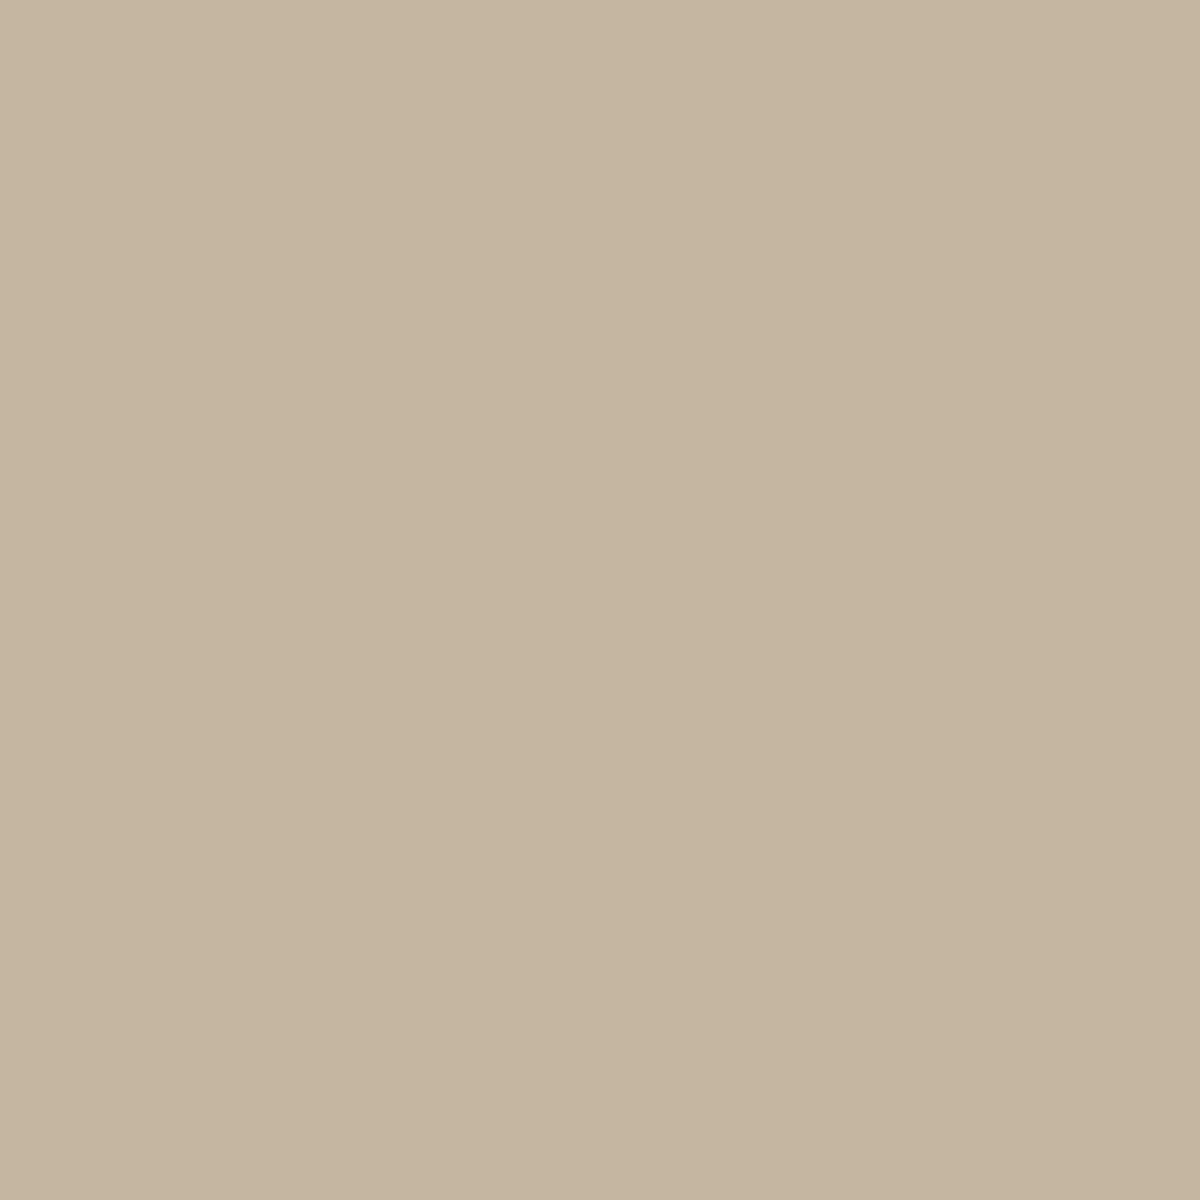 3M Scotchcal Pellicola colorata traslucida 3630-149 Beige chiaro 1,22 m x 45,7 m